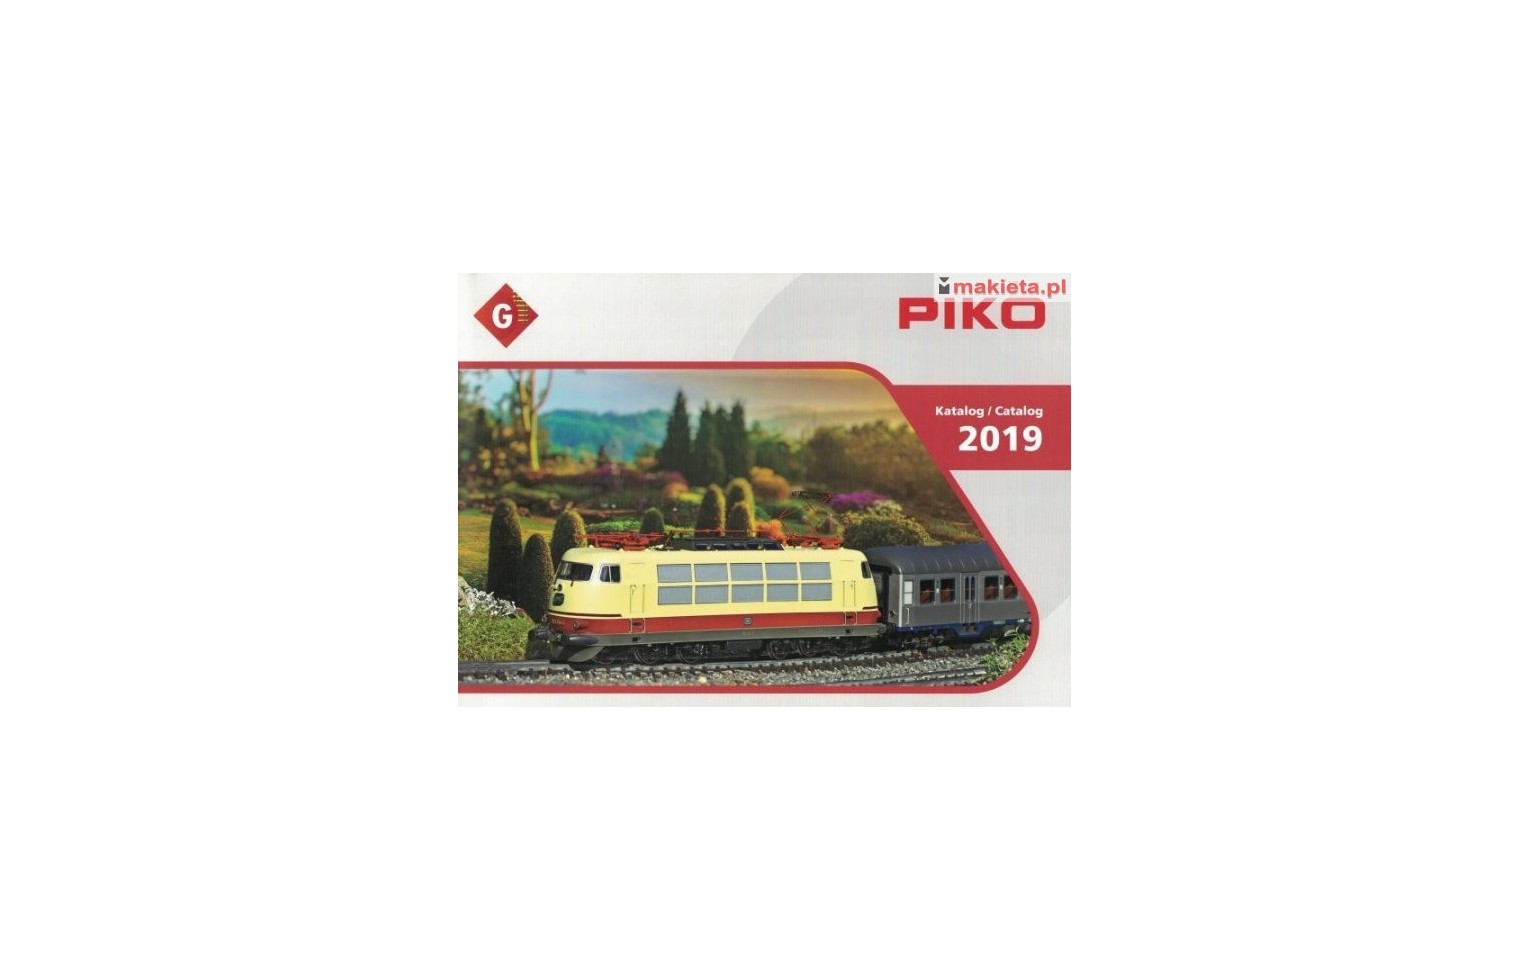 PIKO 99709, katalog skali G - 2019